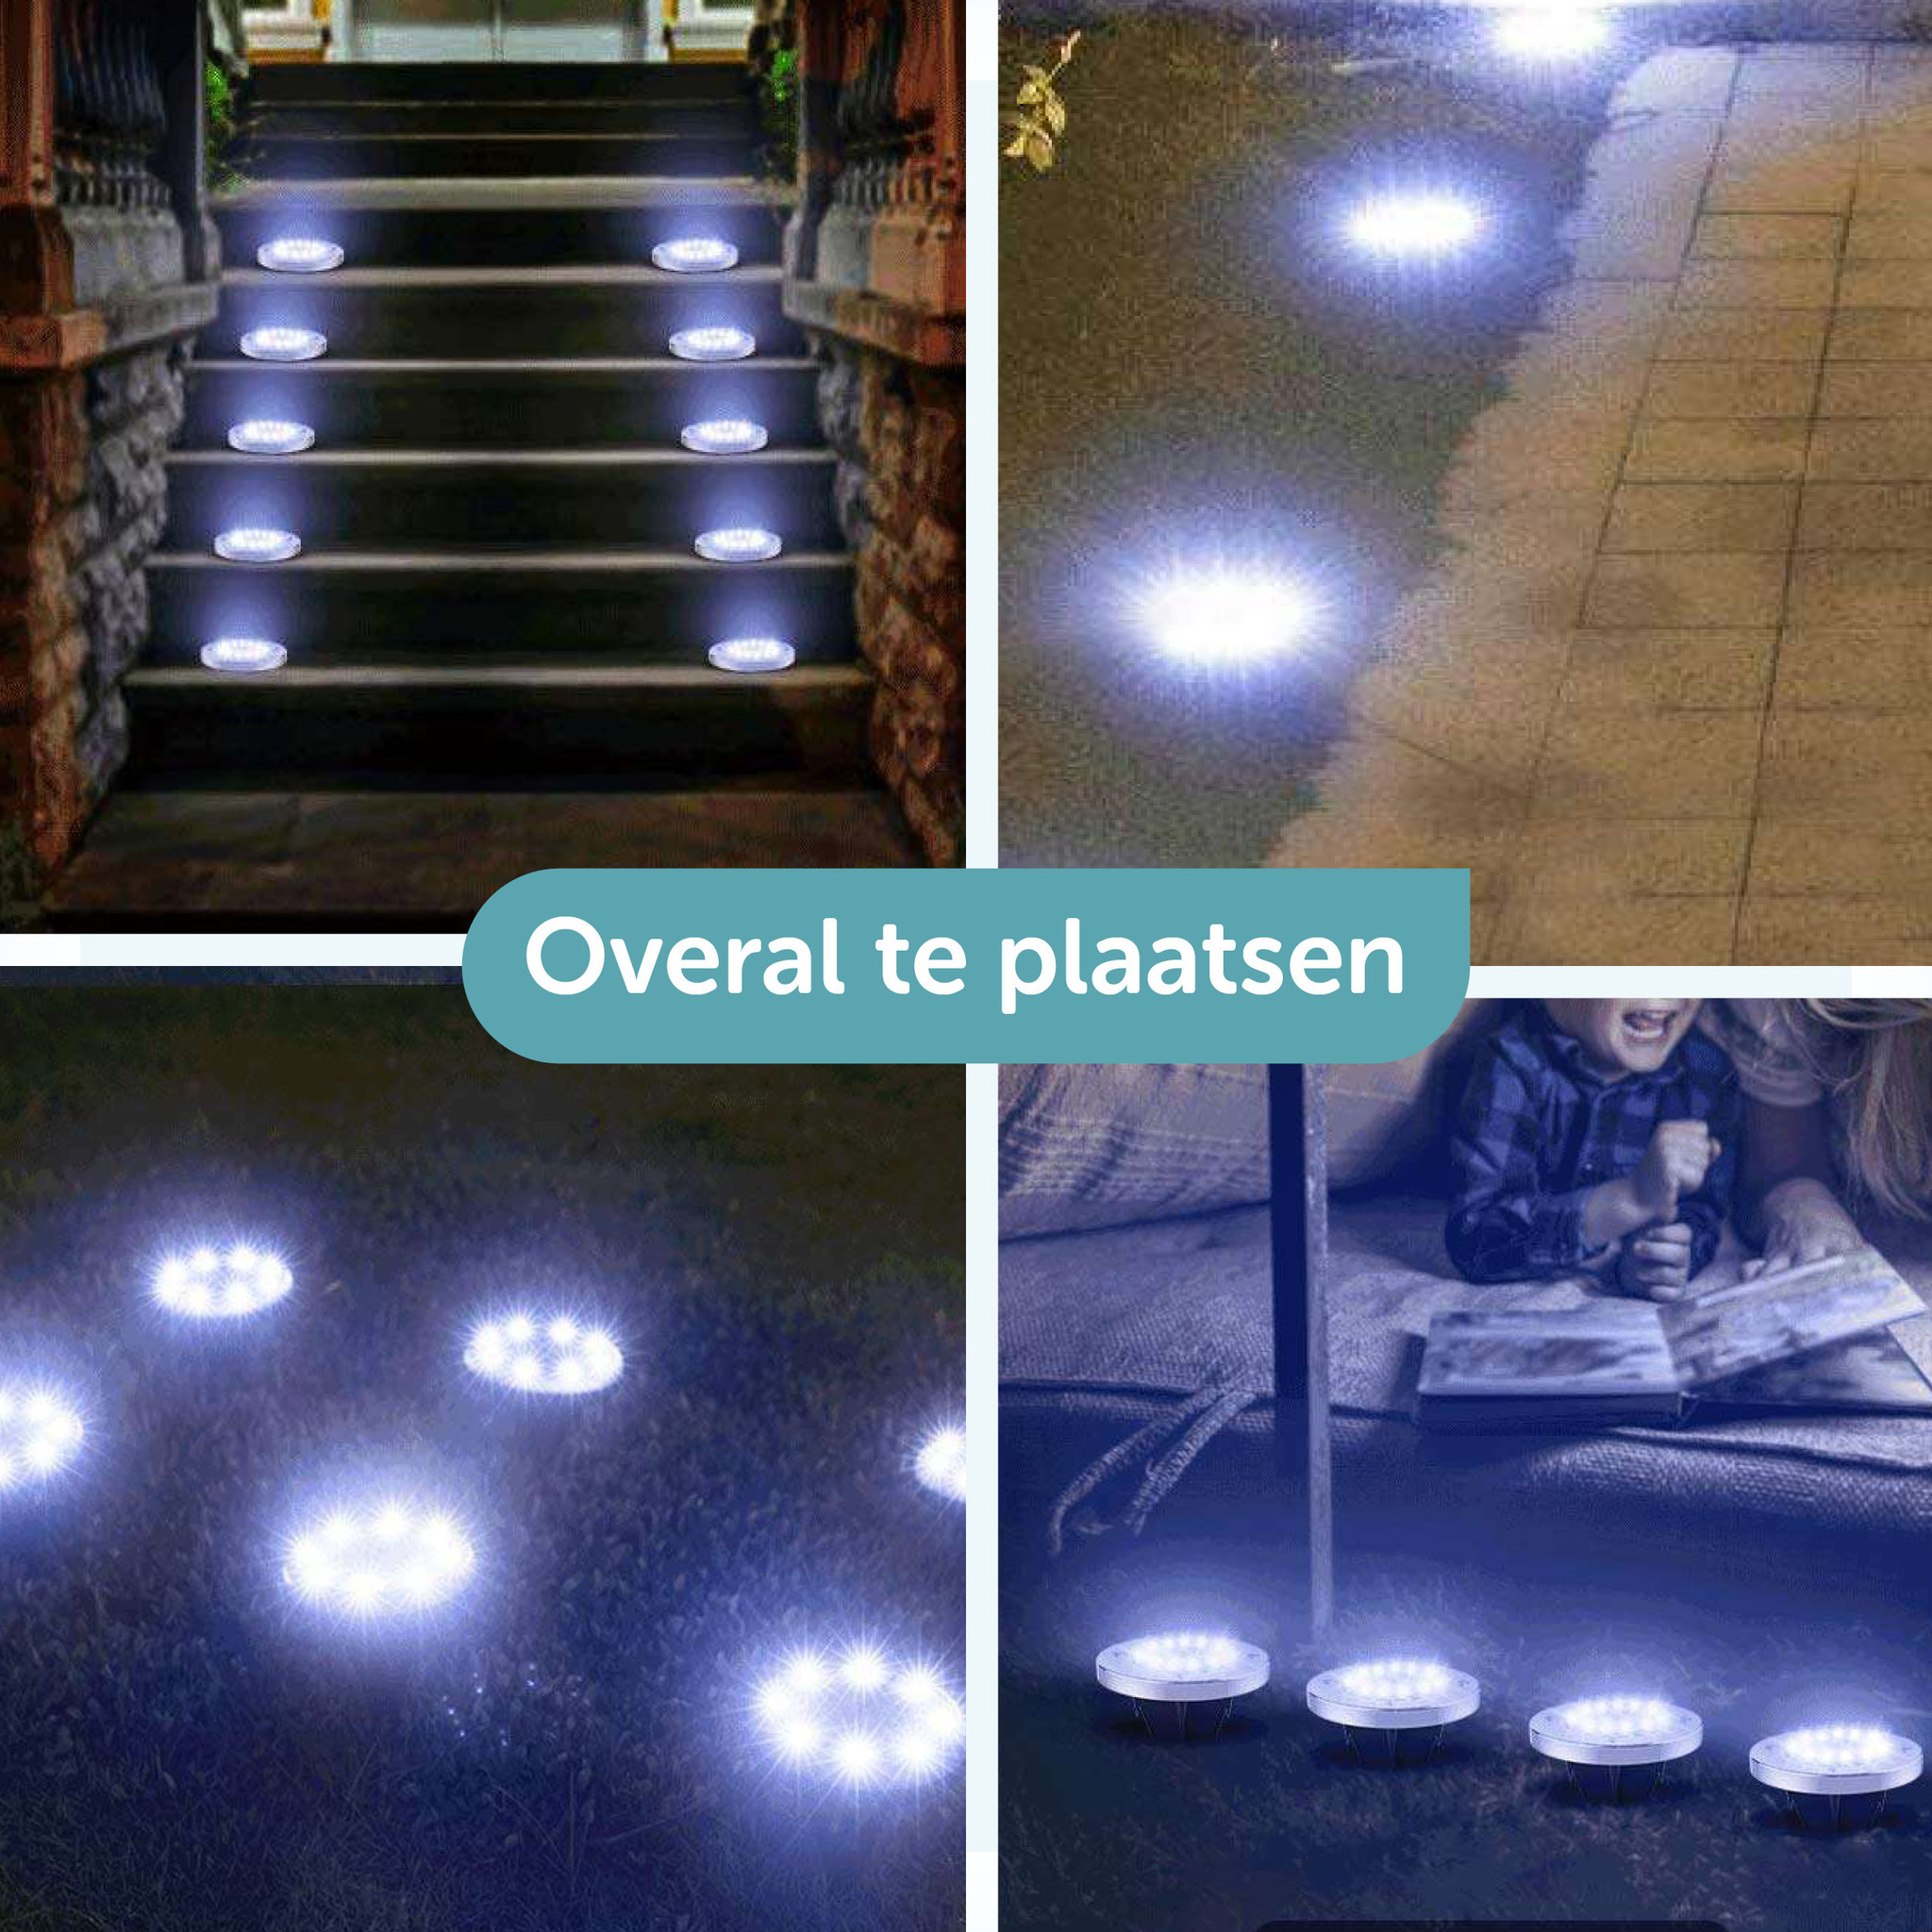 ForDig Solar Grondspots (8 stuks) - RVS Grond Spots op met 16 LED Spotjes - Uur Buiten Verlichting in Tuin - IP65 Waterdicht - Tuinverlichting Lamp - Buitenverlichting Tuinlamp - Dagdeal.nl